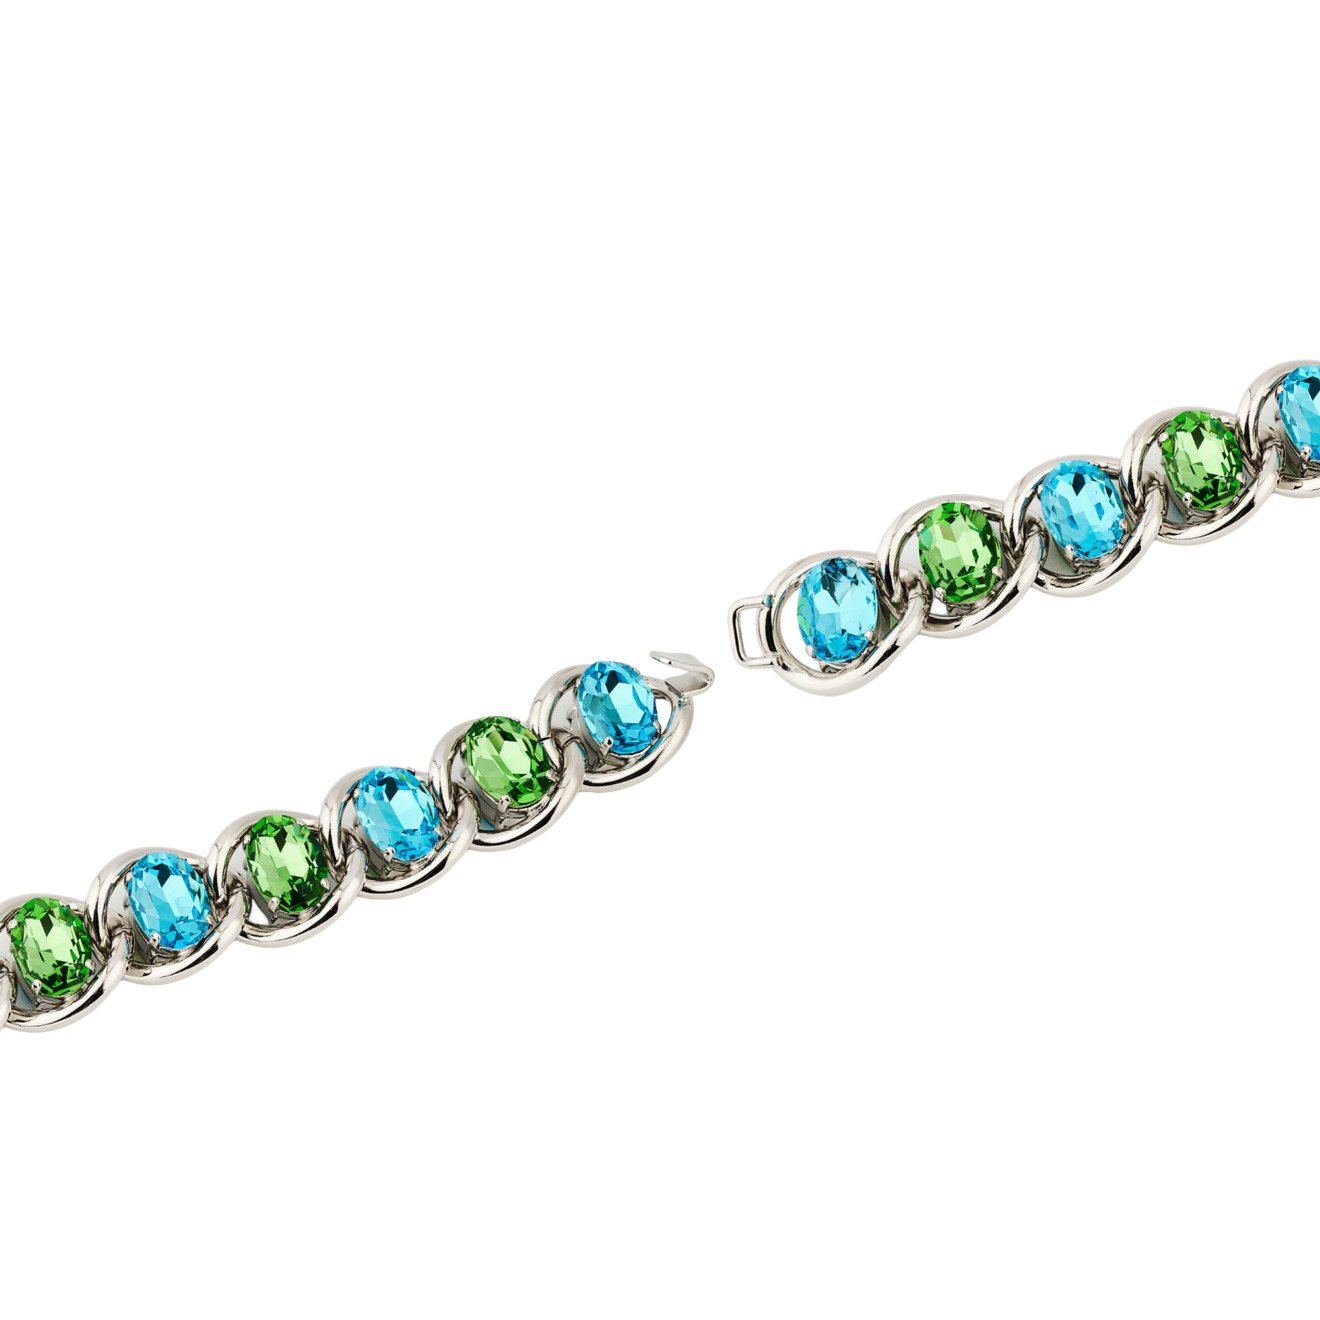 Marni Браслет-цепь с зелено-голубыми кристаллами дизайнерский геометрический браслет на руку с кубиками натурального гематита и голубыми кристаллами